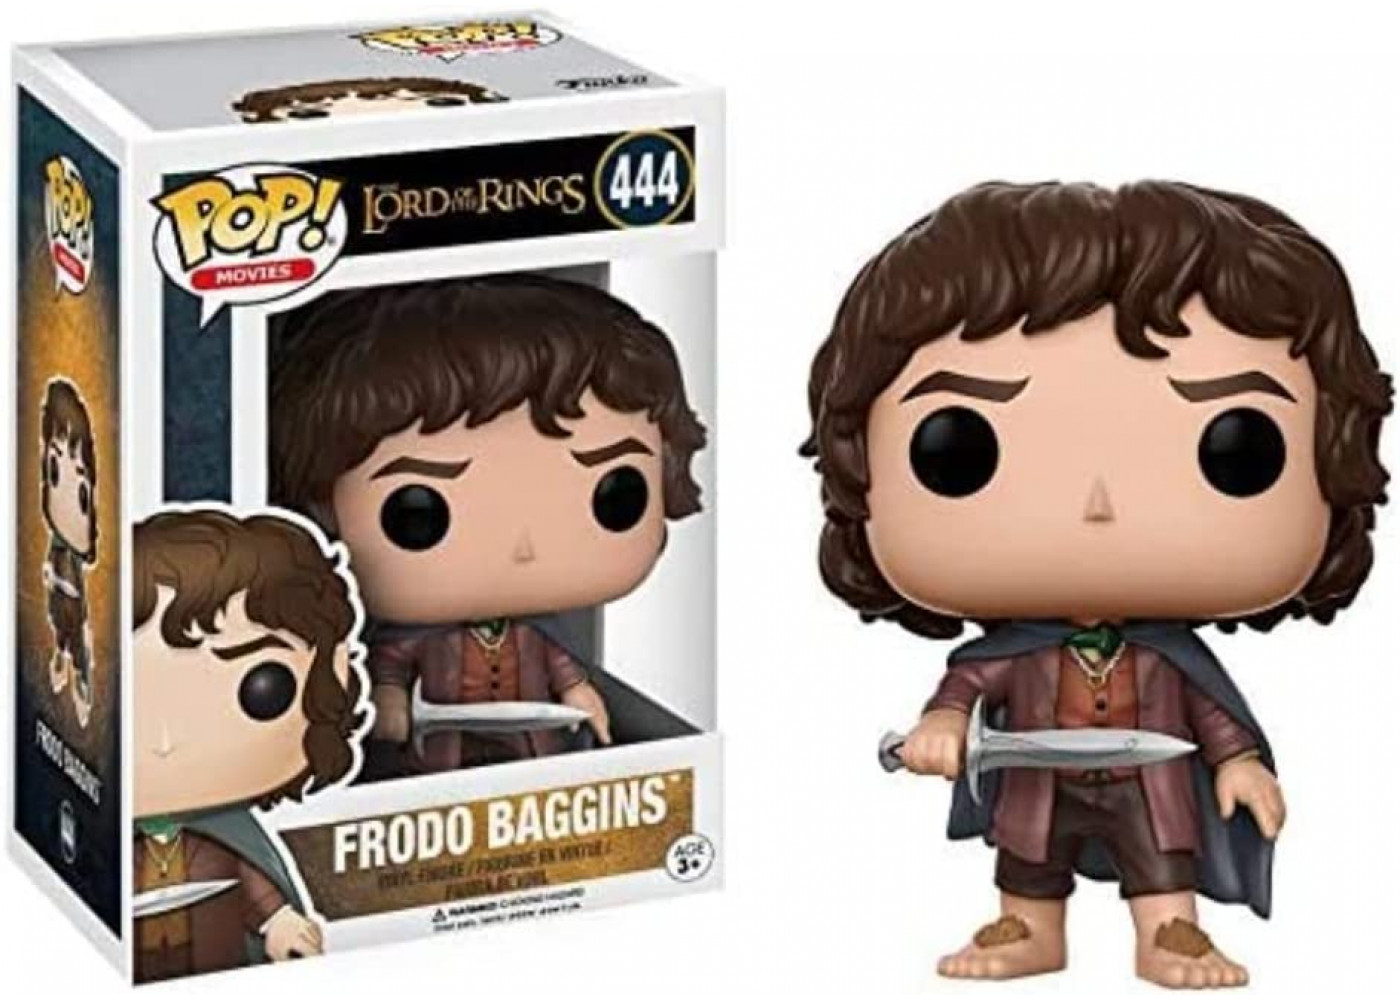 Фігурка Фанко Фродо Беггінс Володар Перстнів №444 Hobbit Frodo Baggins Funko 13551